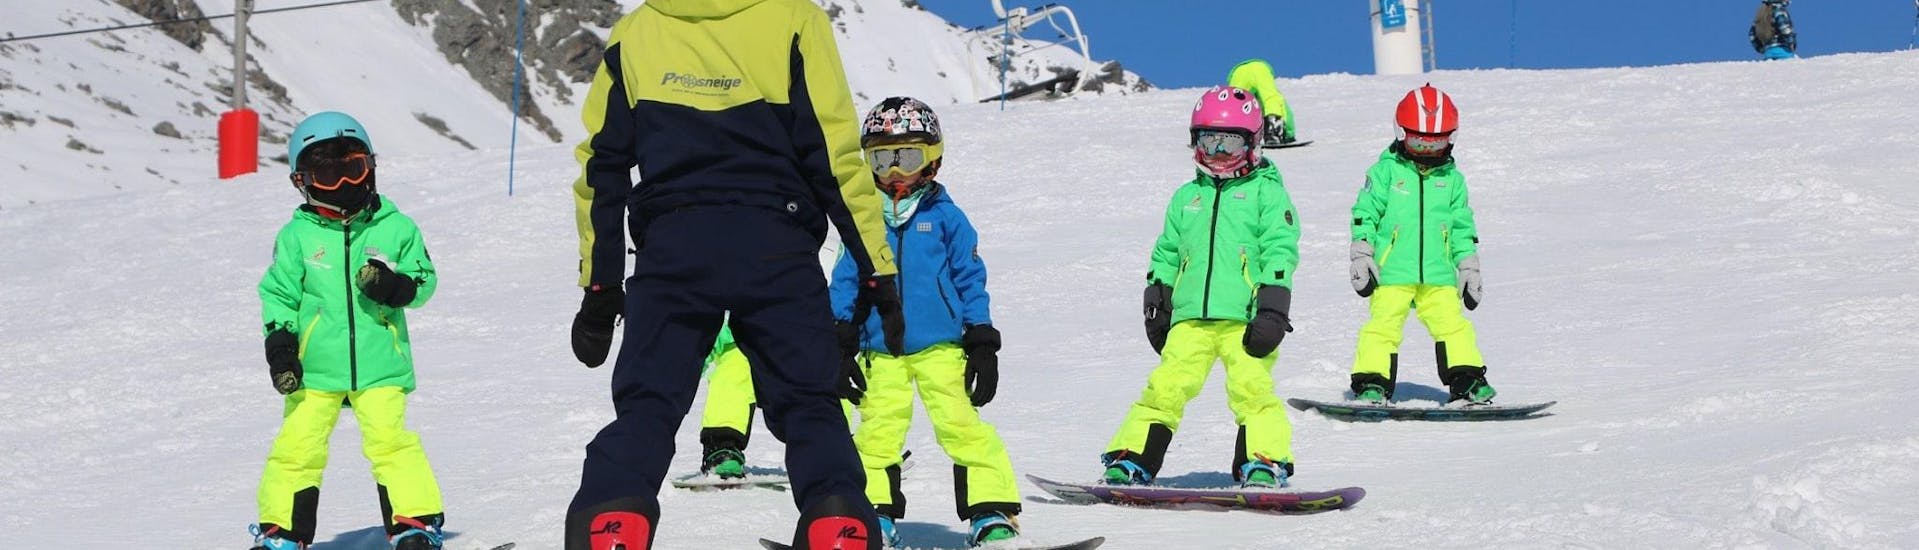 Un instructor de esquí de la escuela de esquí Prosneige Alpe d'Huez está enseñando a niños sonrientes, durante las clases de snowboard para niños de todas las edades y todos los niveles.